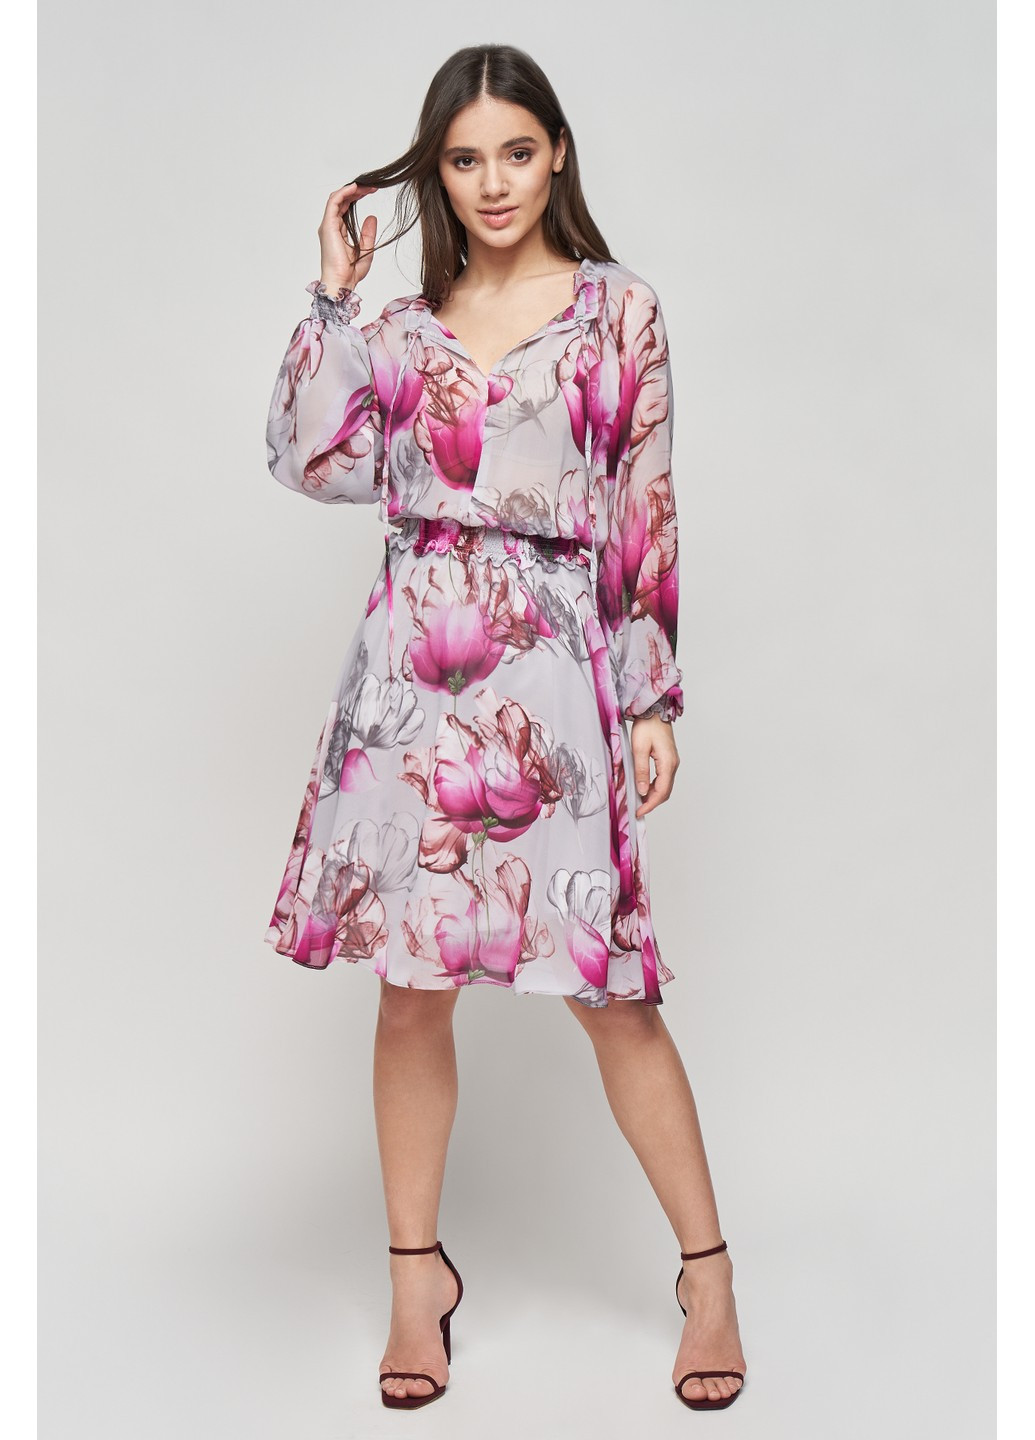 Комбинированное коктейльное шелковое платье санта клеш, с пышной юбкой BYURSE с цветочным принтом